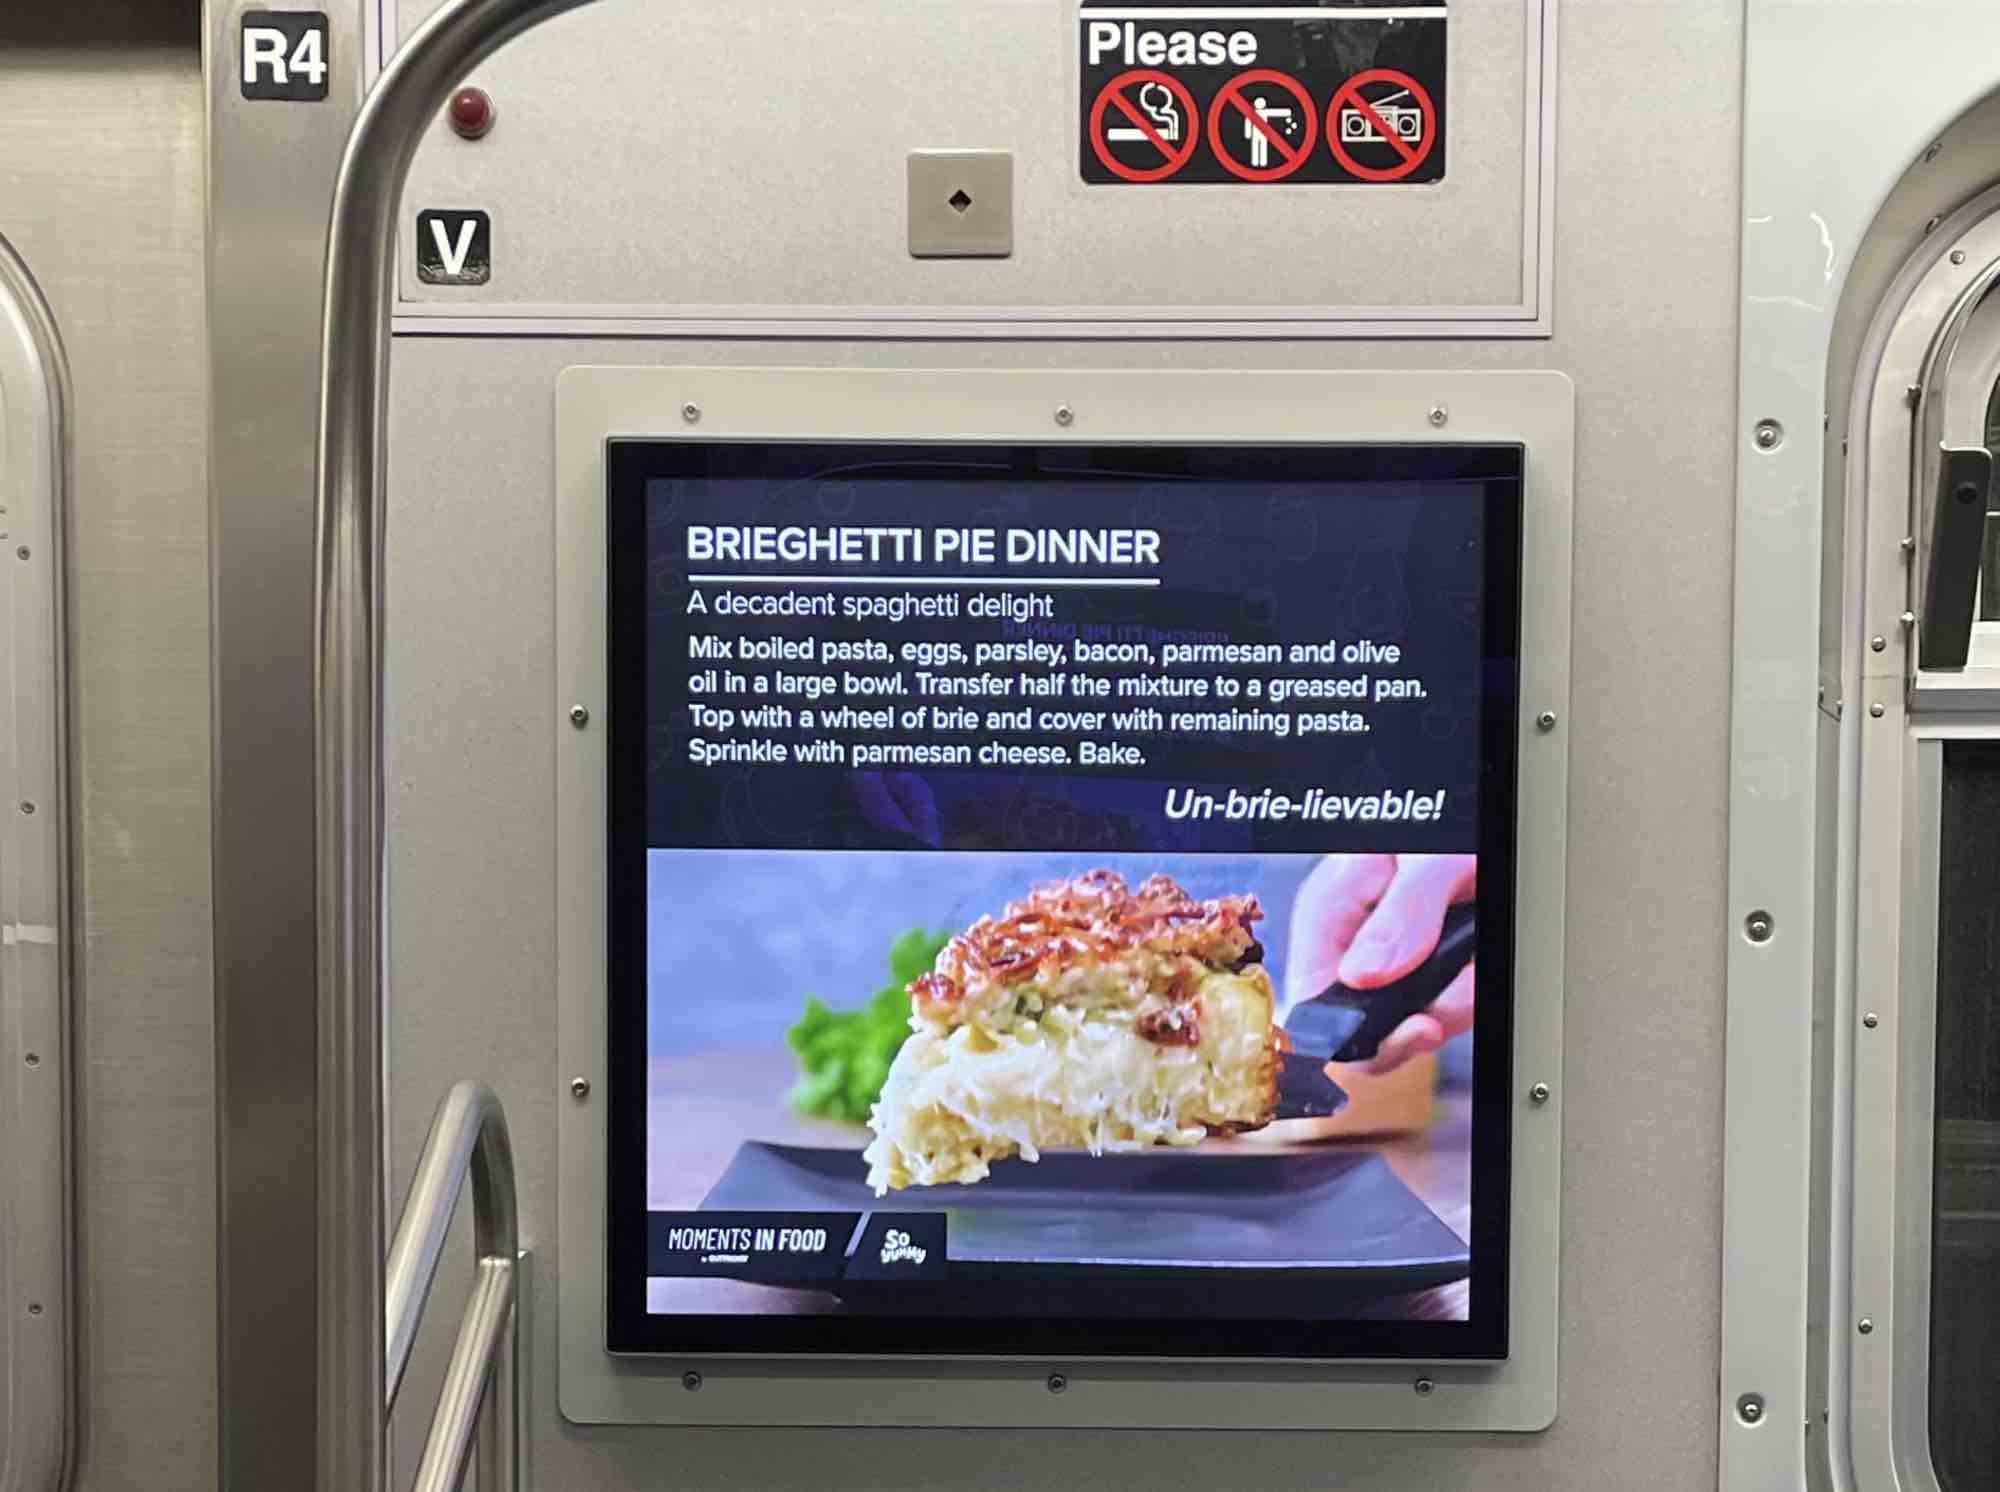 A subway video ad for "brieghetti"